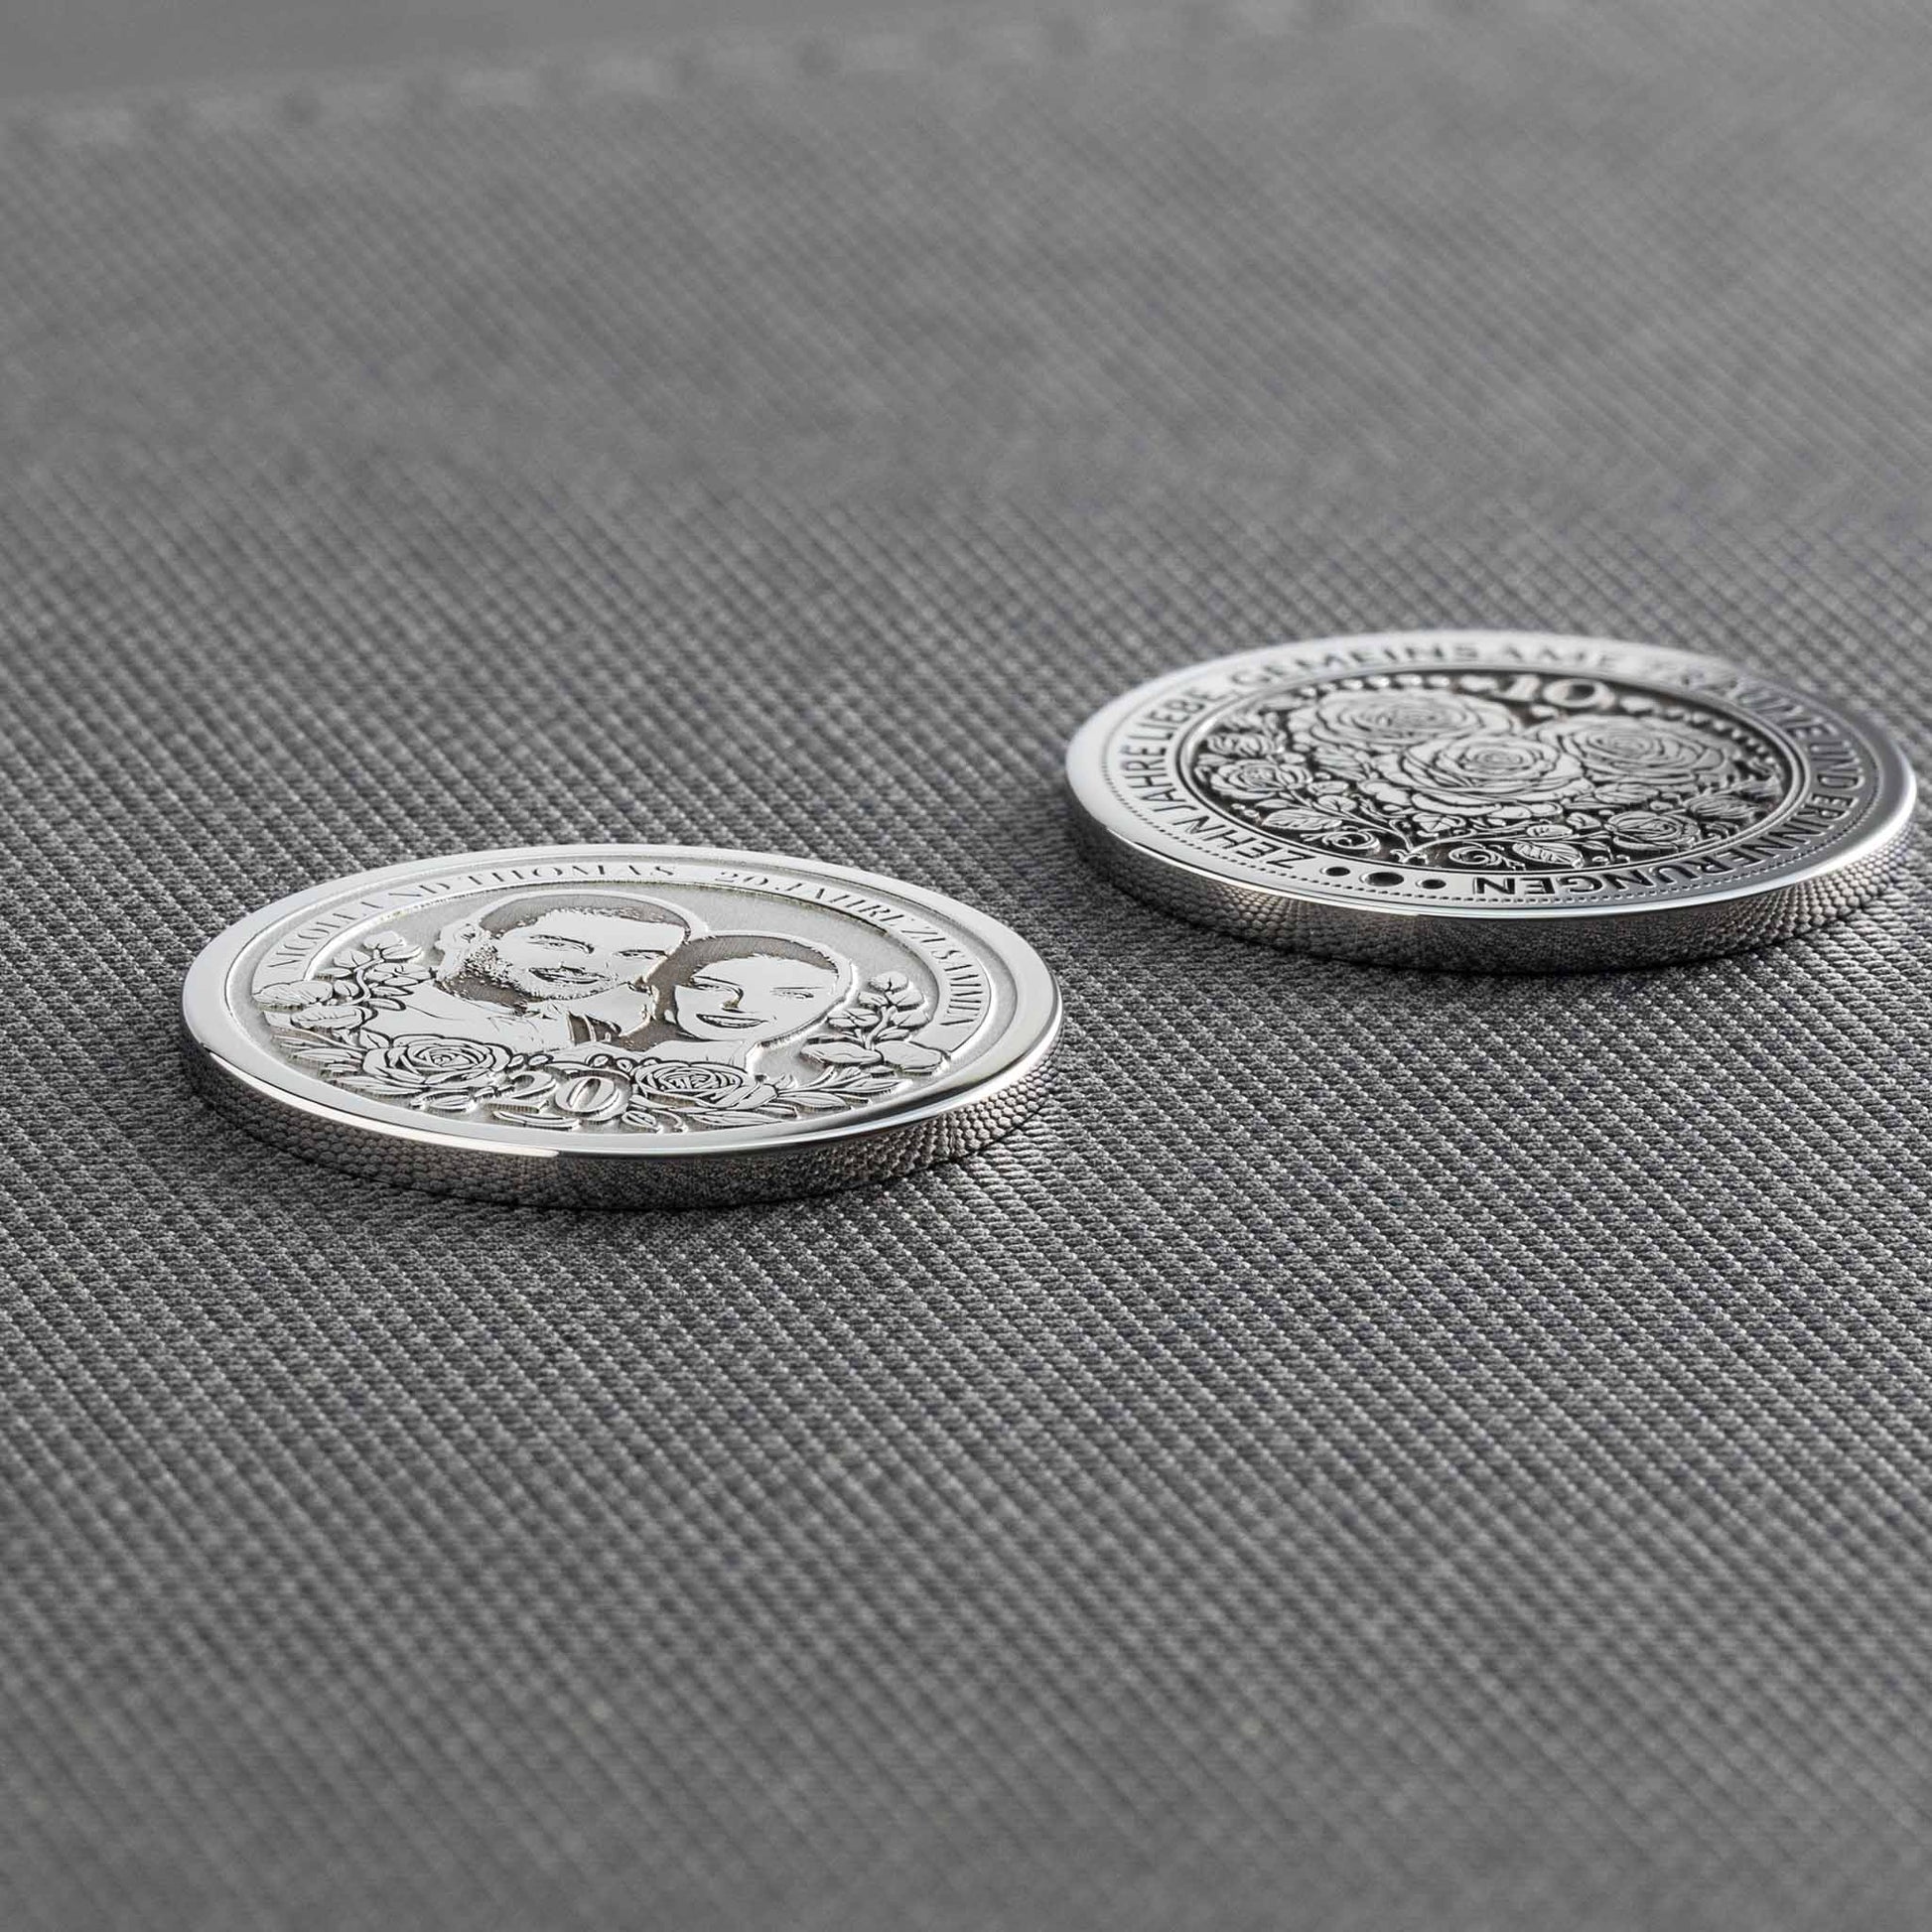 20 Hochzeitstag Personalisierte Münze - Beide seiten ansicht